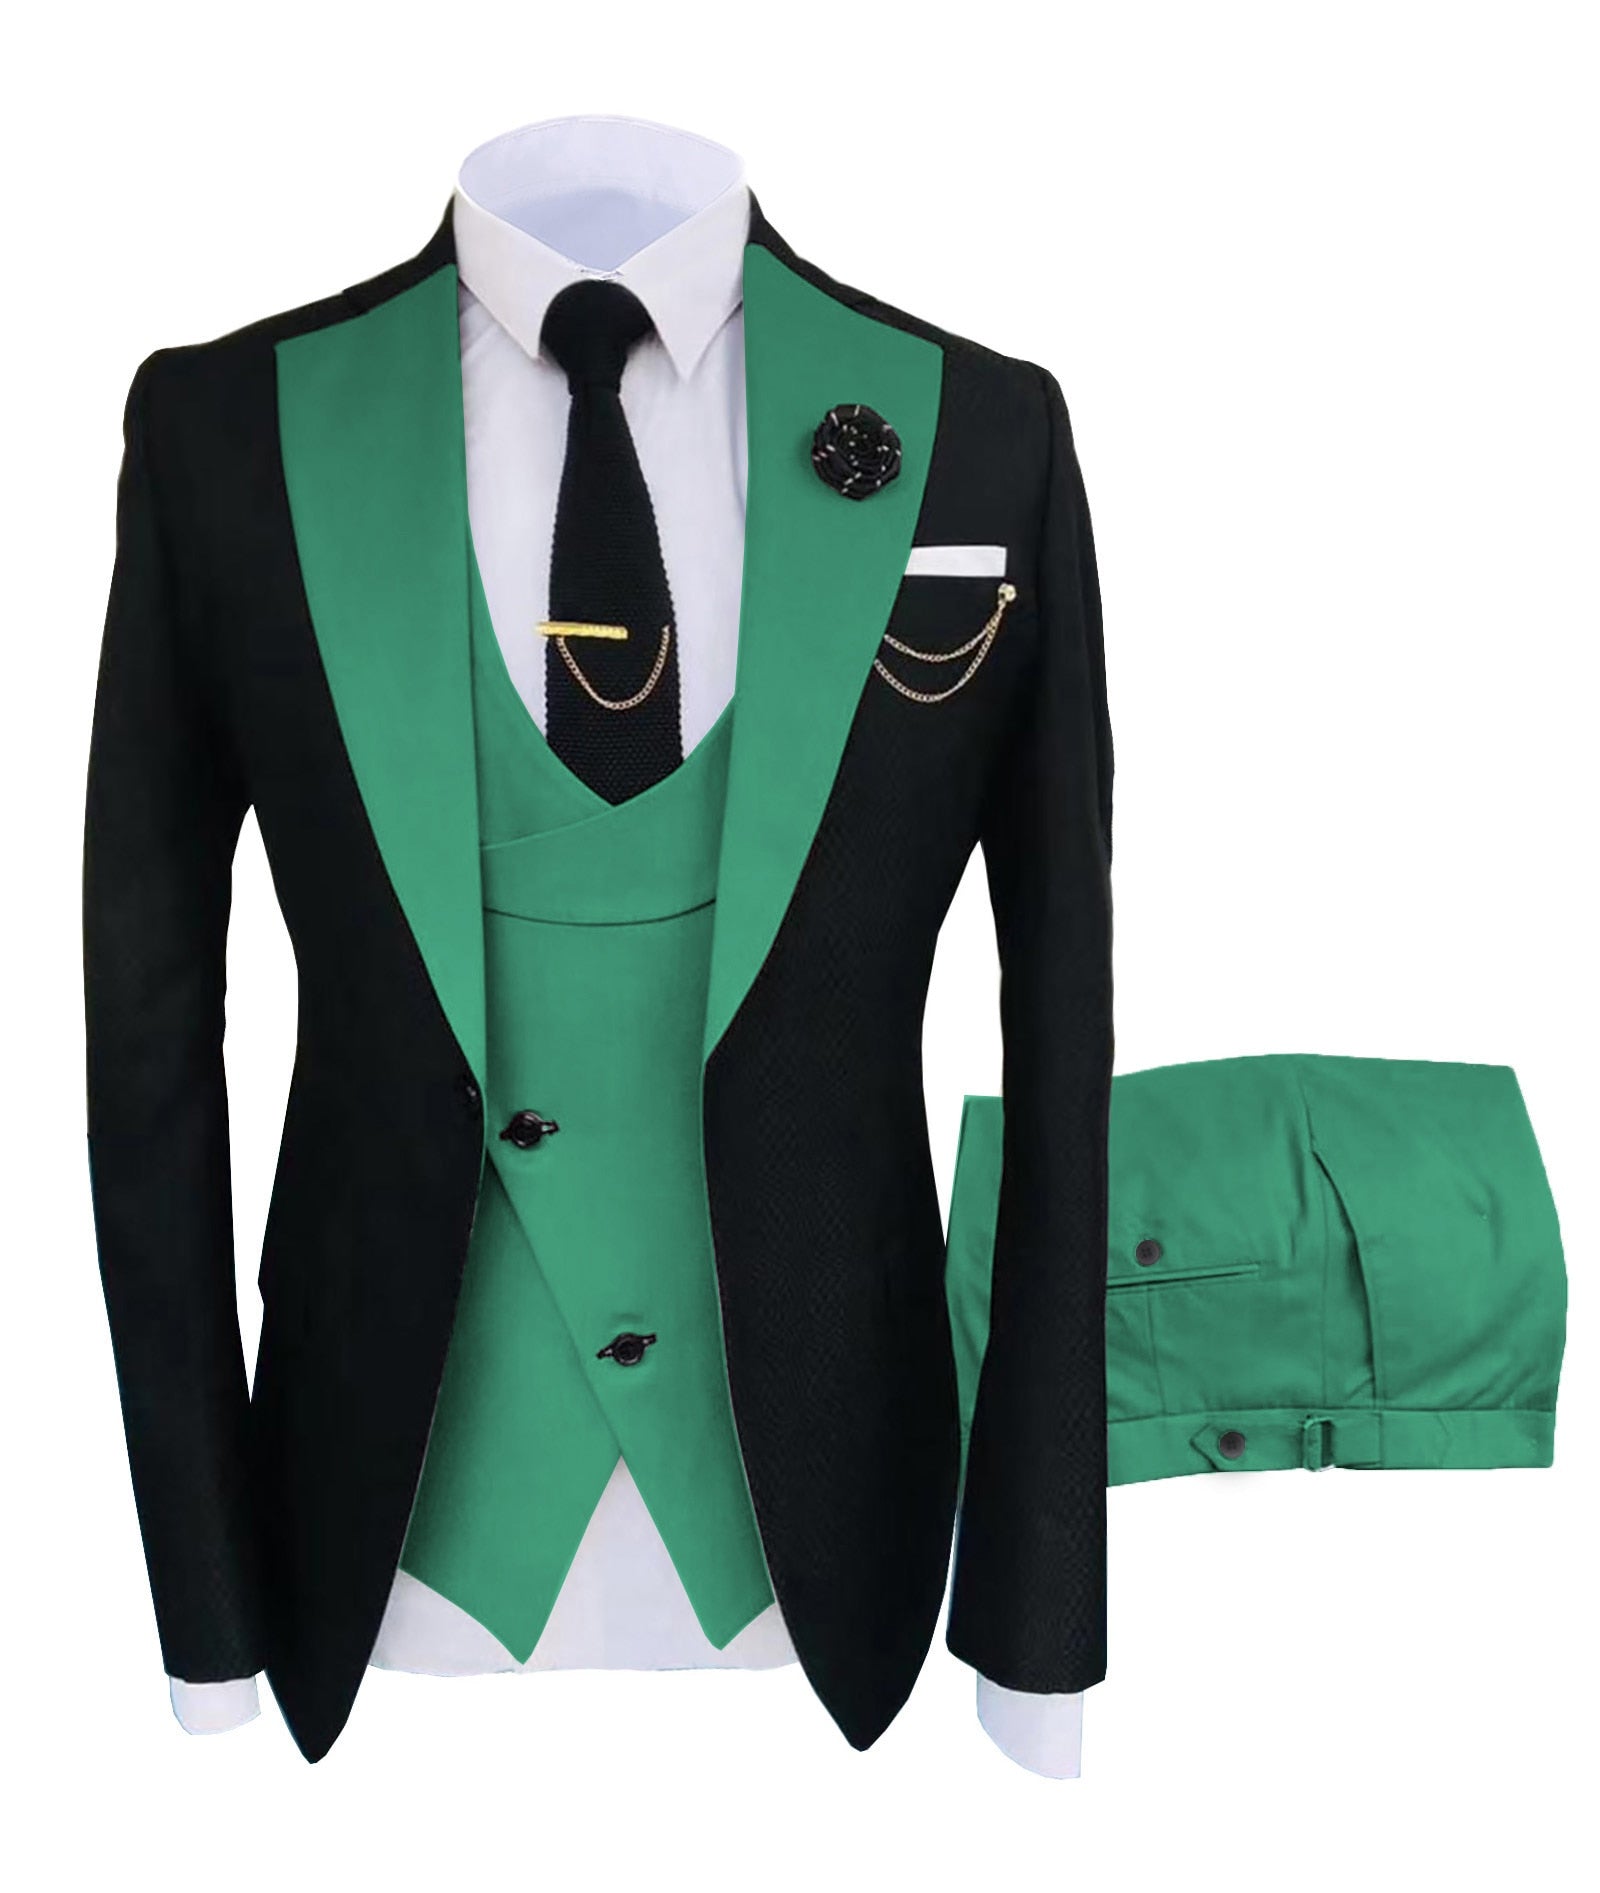 KENTON SUITS Men's Fashion Formal 3 Piece Tuxedo (Jacket + Vest + Pant –  Divine Inspiration Styles